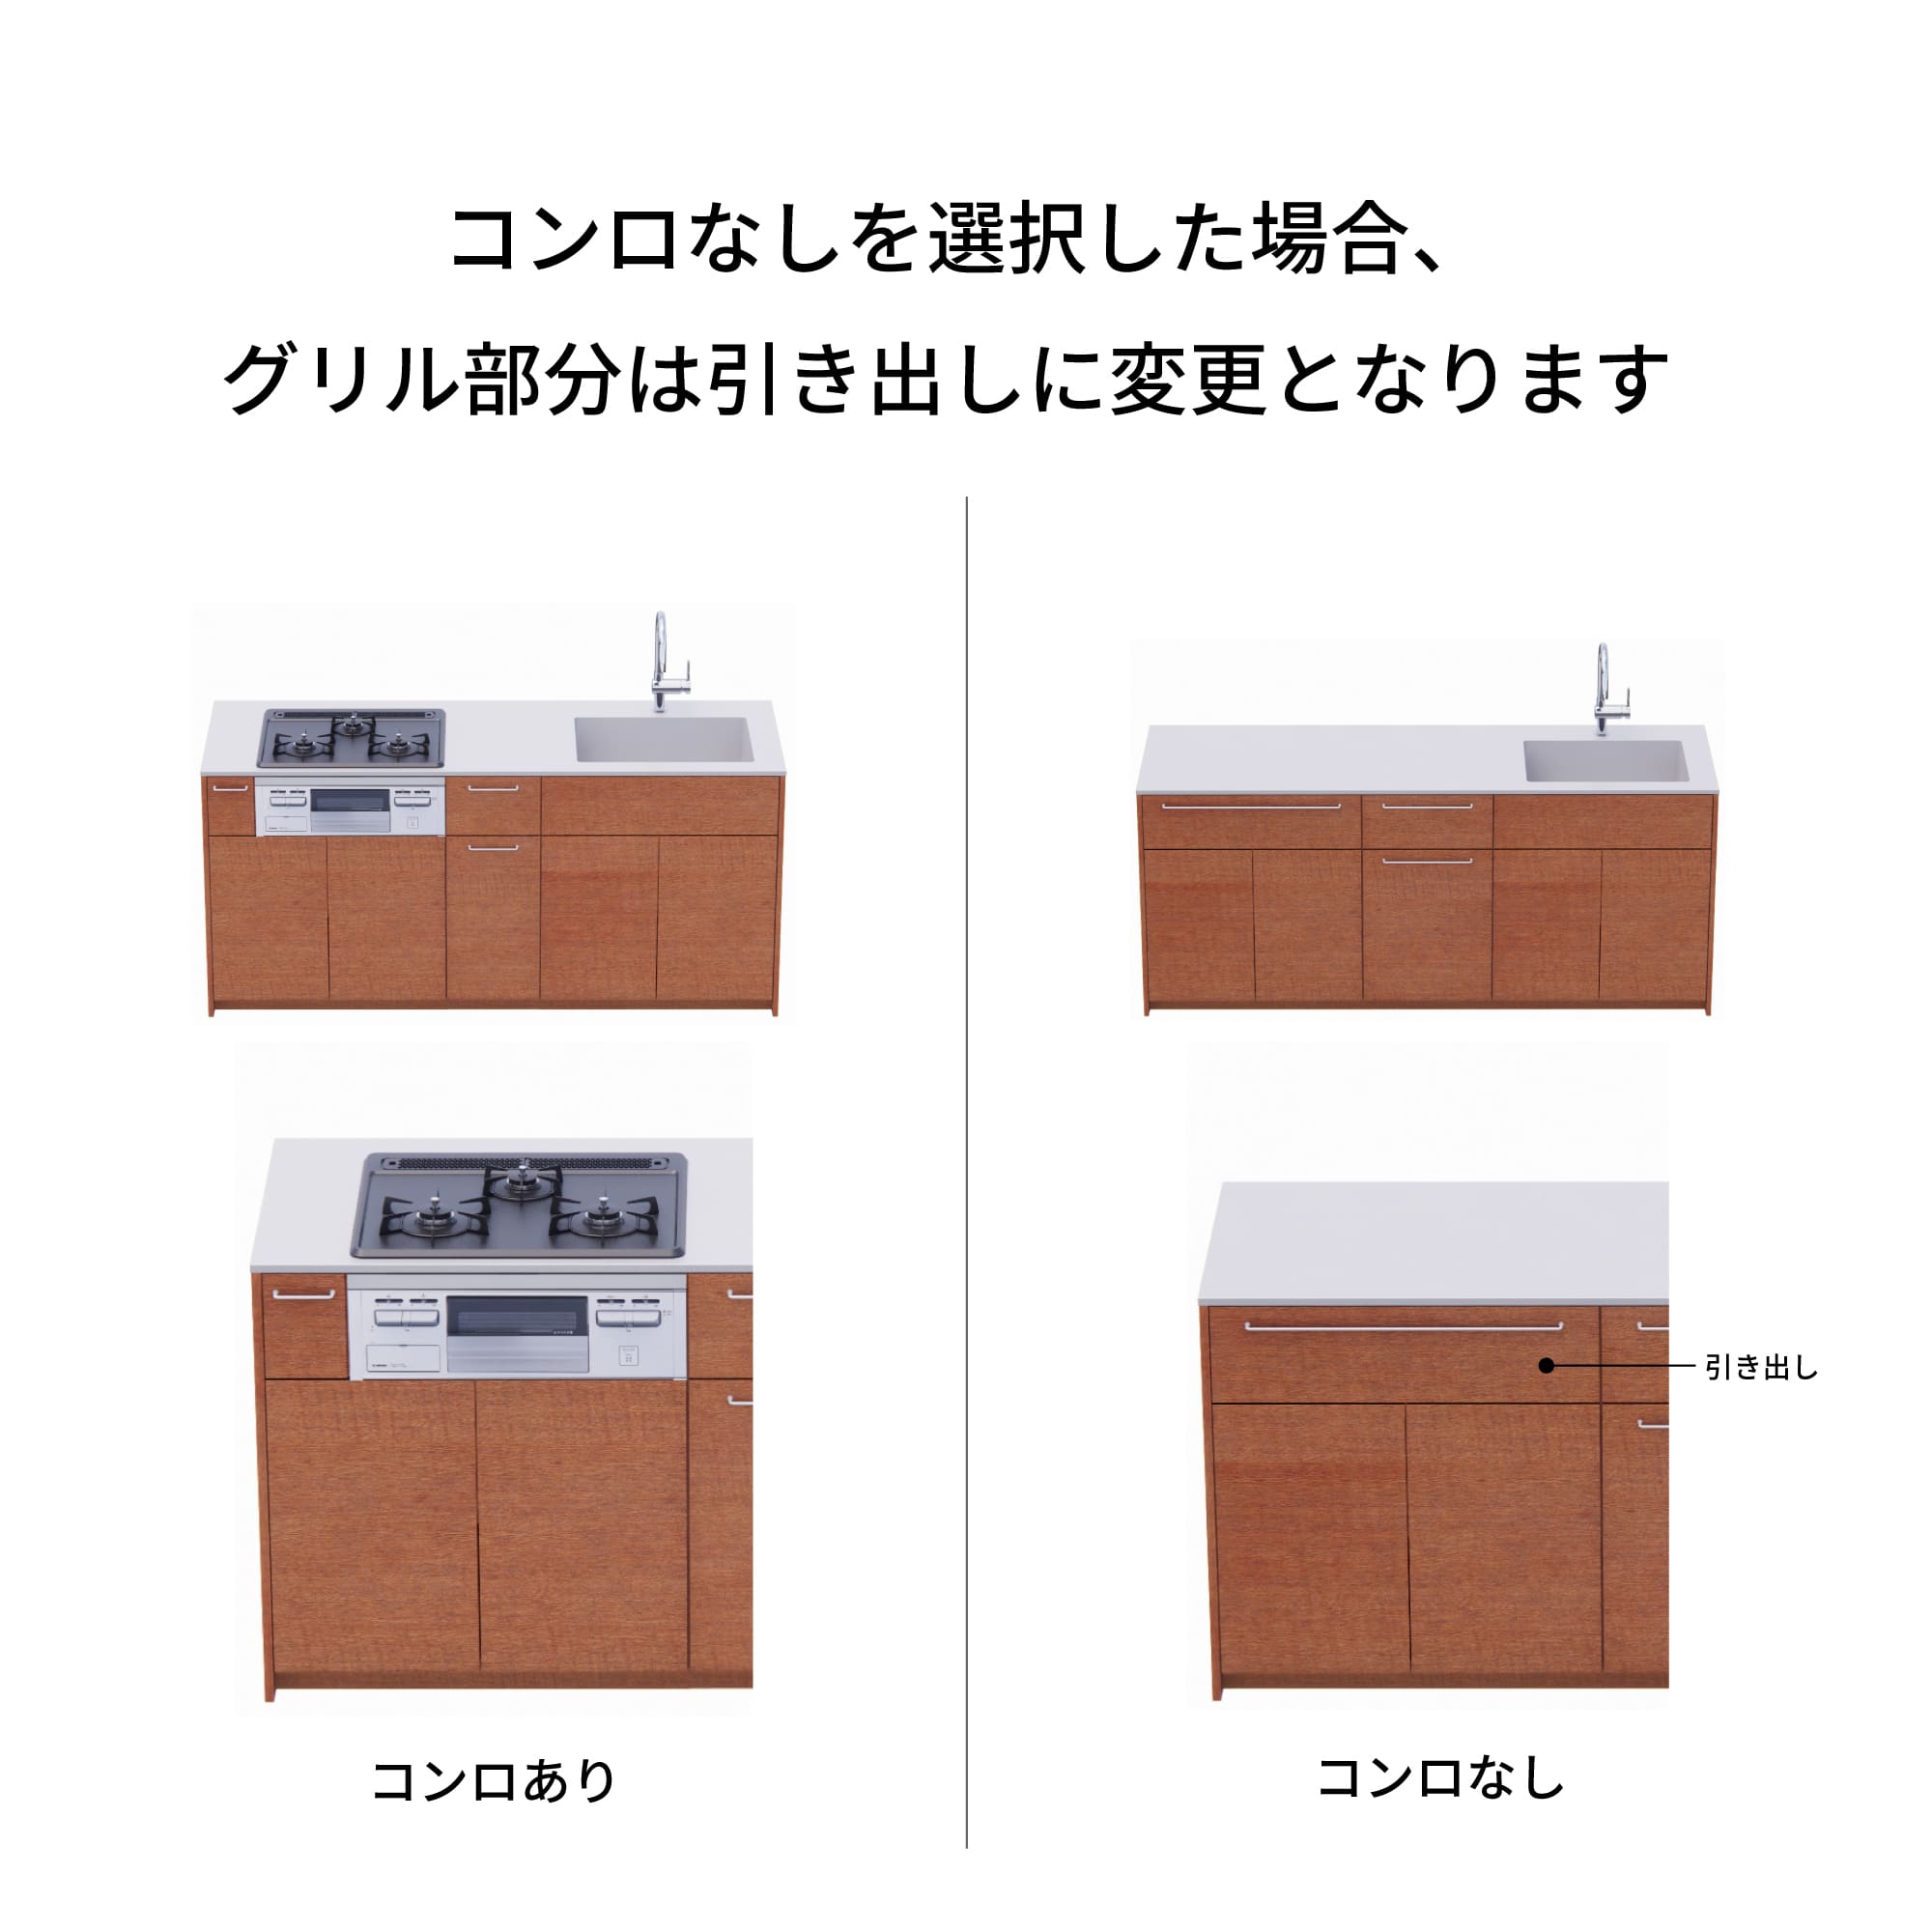 木製システムキッチン 対面型 W2440～2740・コンロなし / オーブンなし / 食洗機あり KB-KC022-45-G183 コンロ無しの場合、通常魚焼きグリルがある部分は引き出しになっています